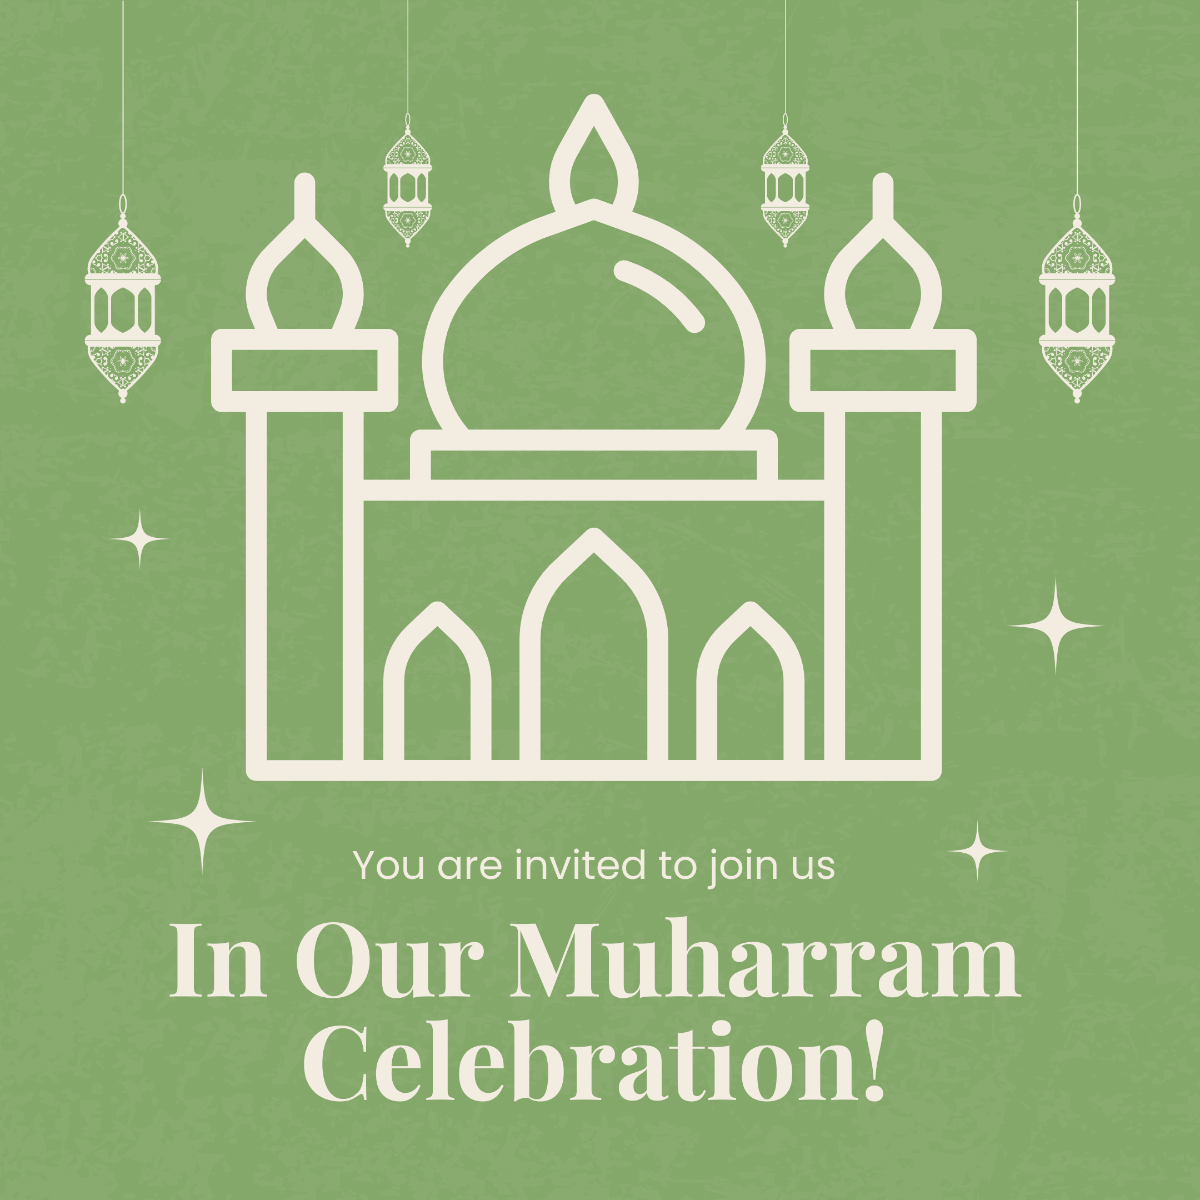 Muharram Celebration Instagram Post Template